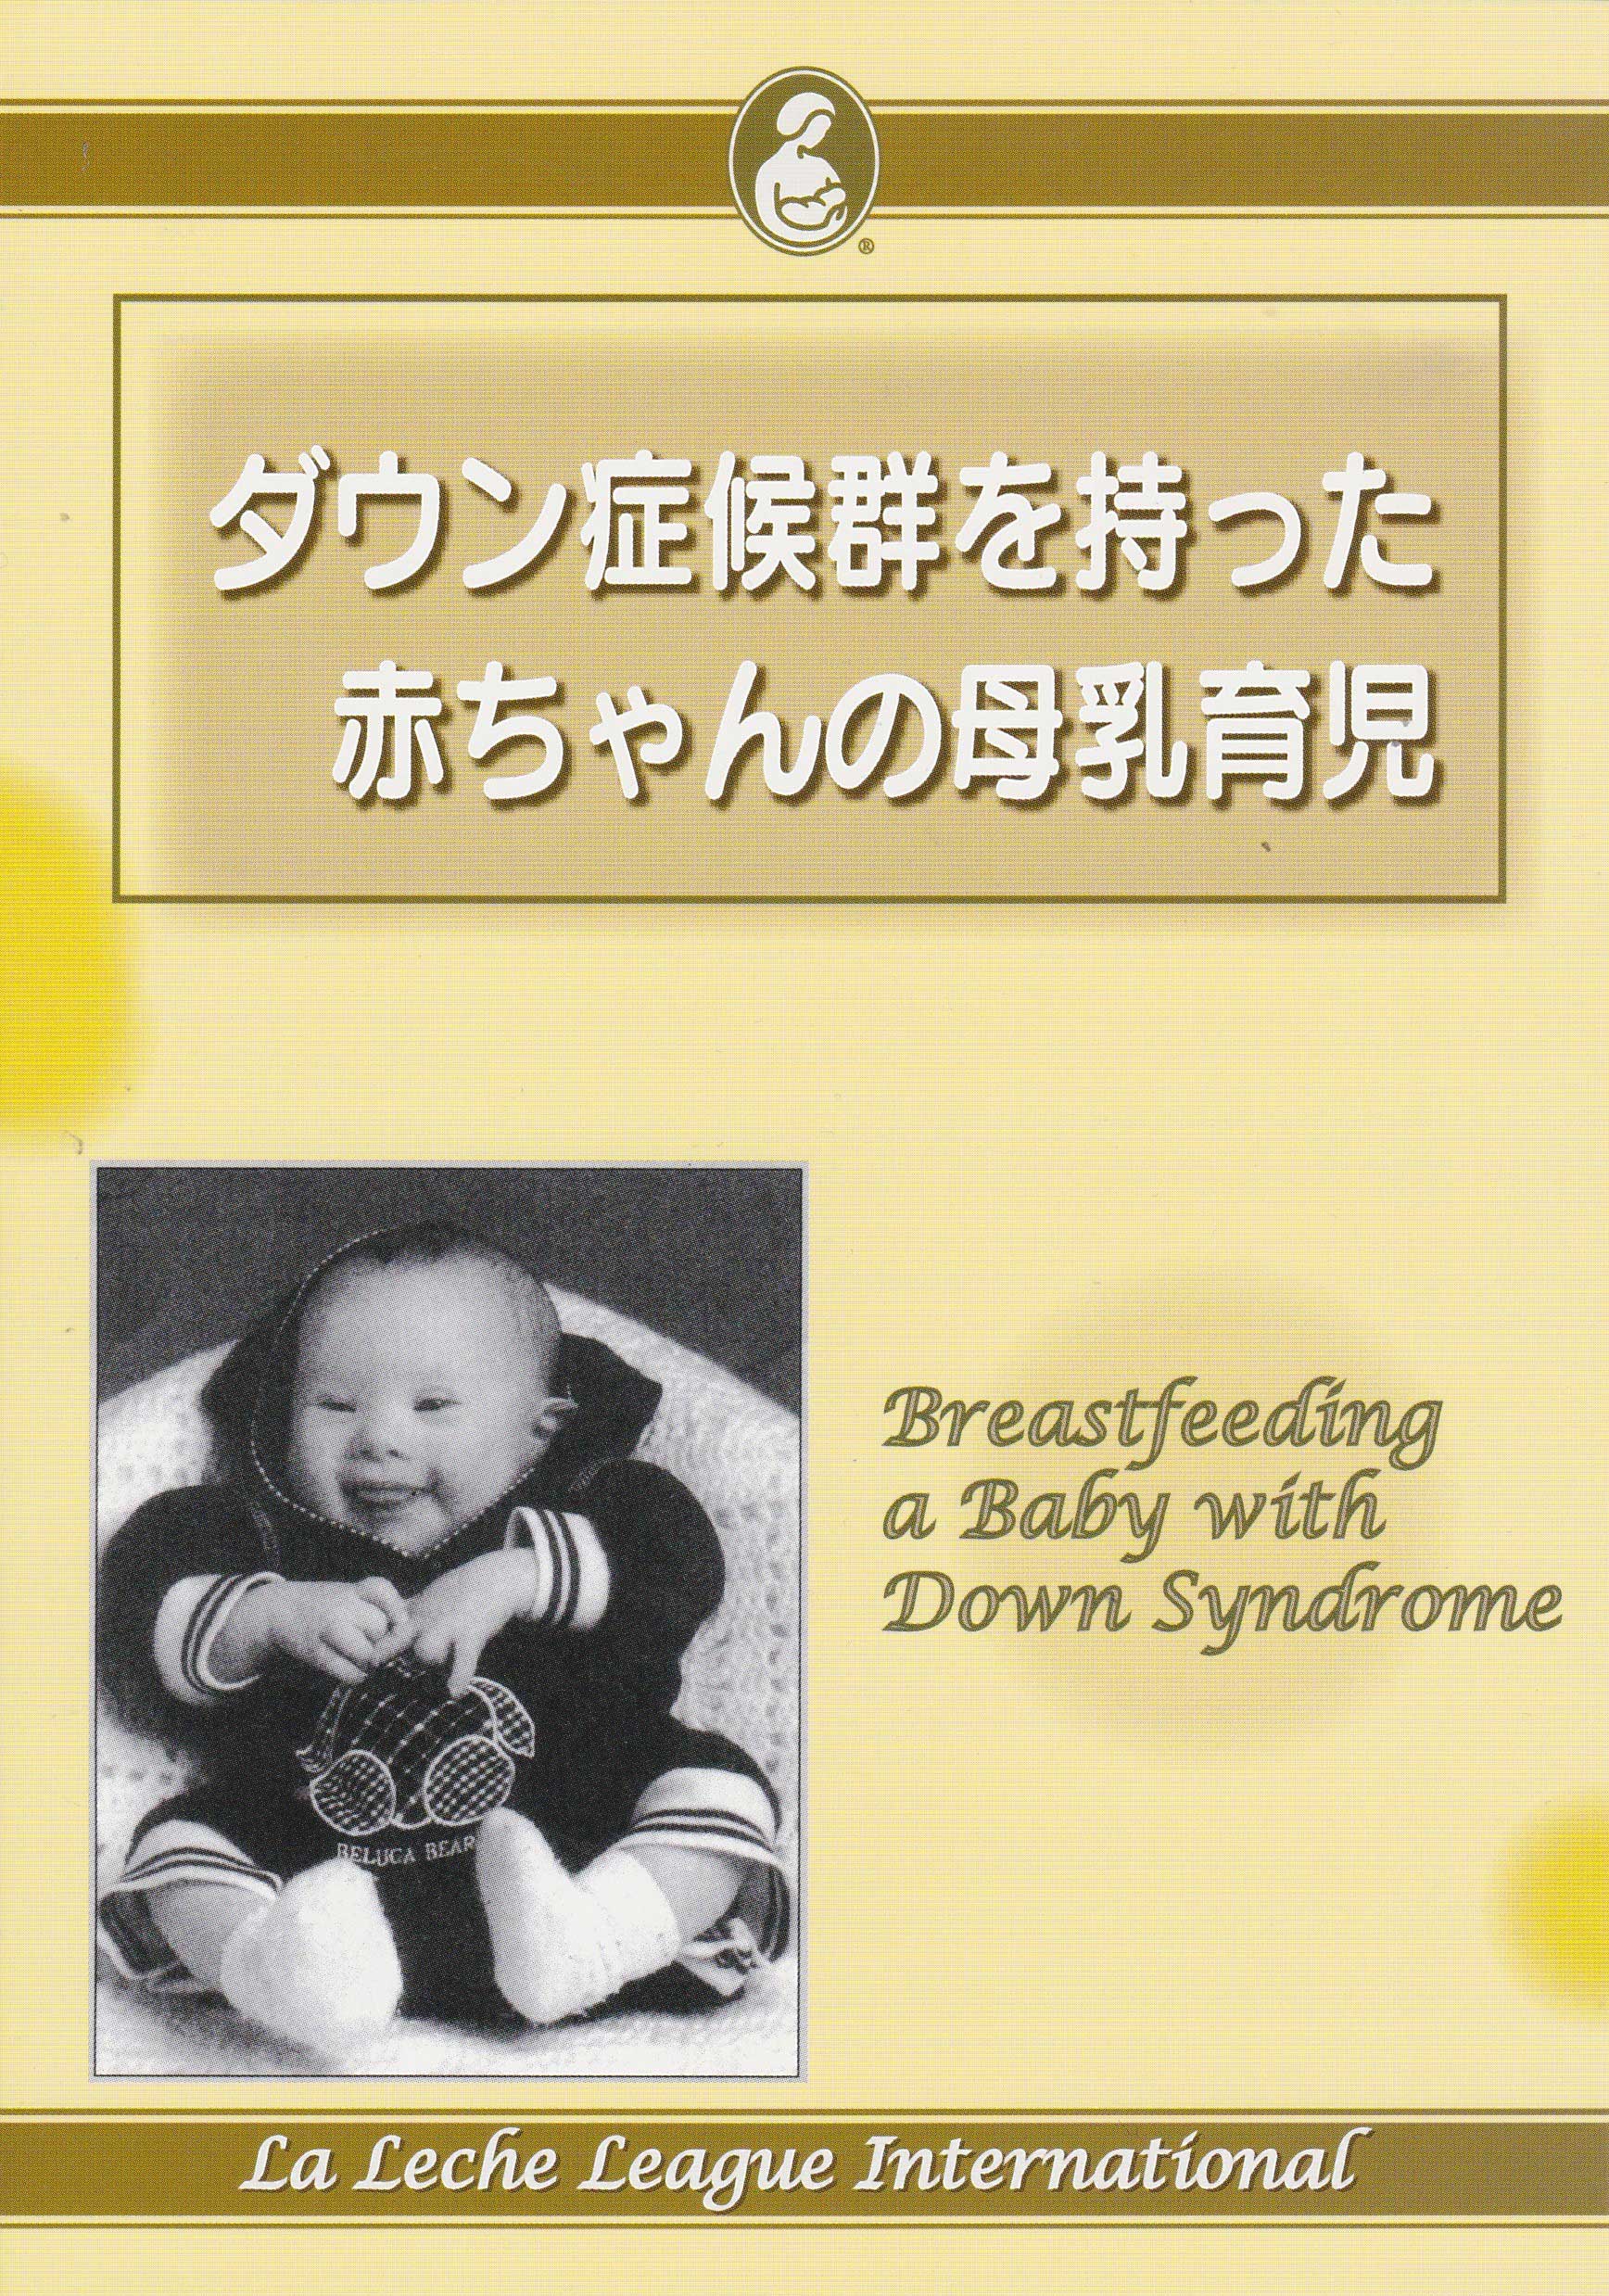 ダウン症候群を持った赤ちゃんの母乳育児